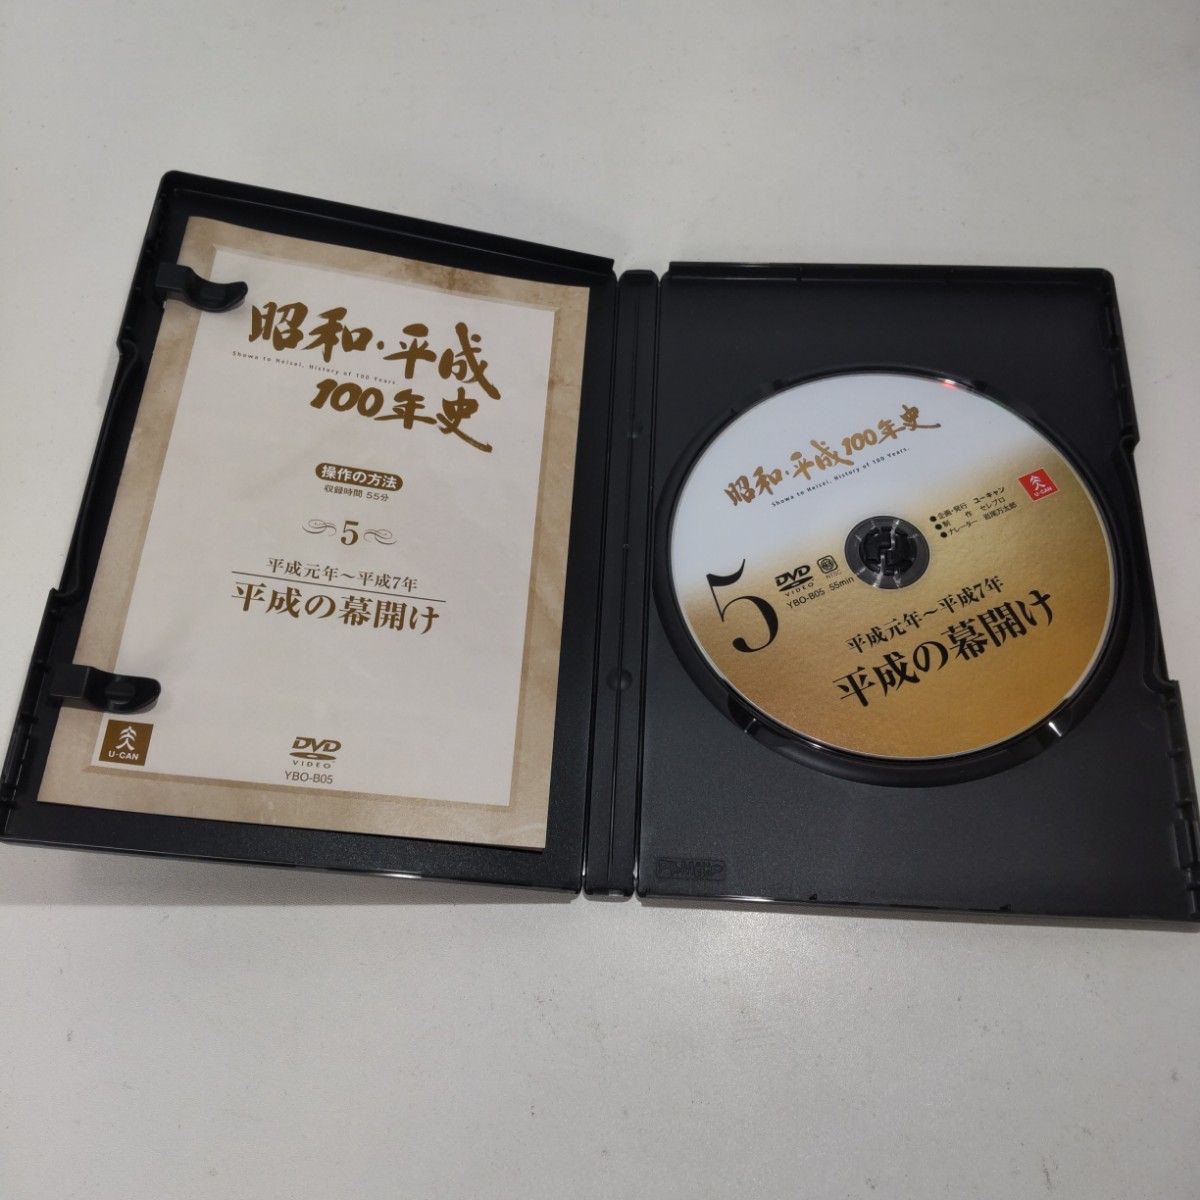 昭和・平成100年史 DVD 全8巻 ユーキャン